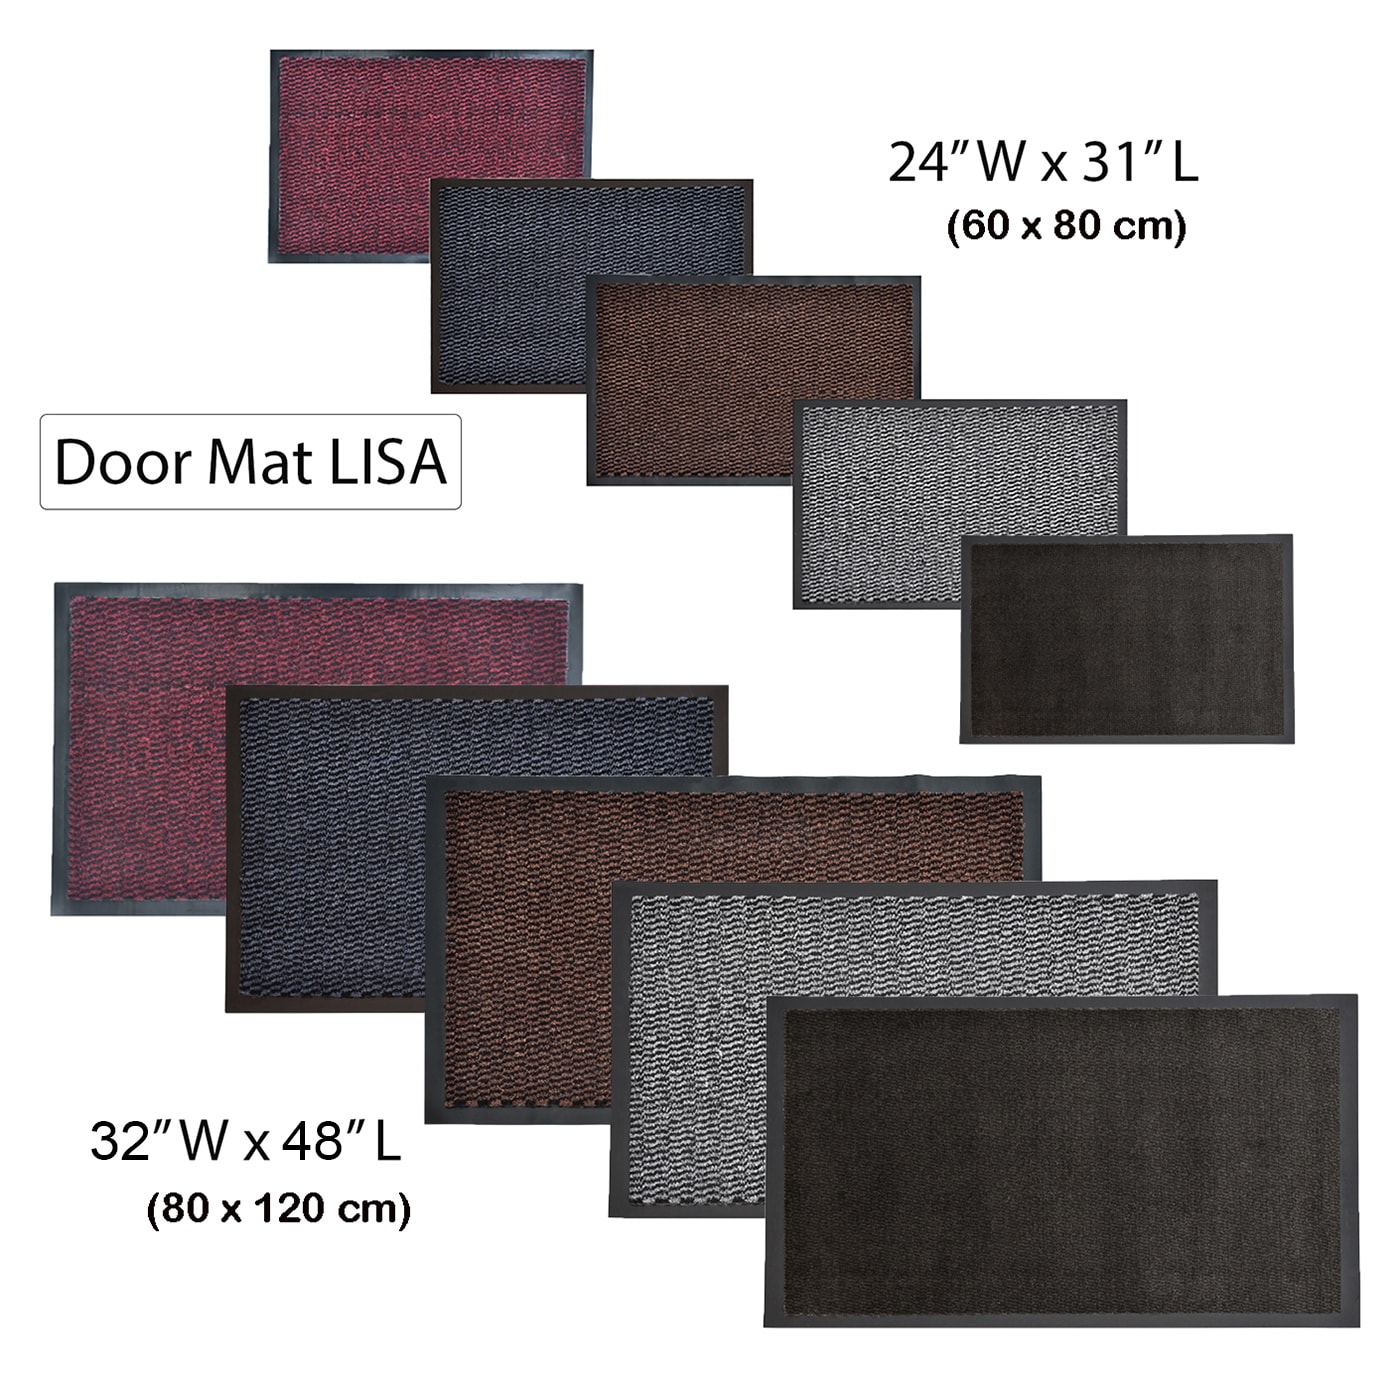 Lisa Large Indoor Door Mat - On Sale - Bed Bath & Beyond - 26968615